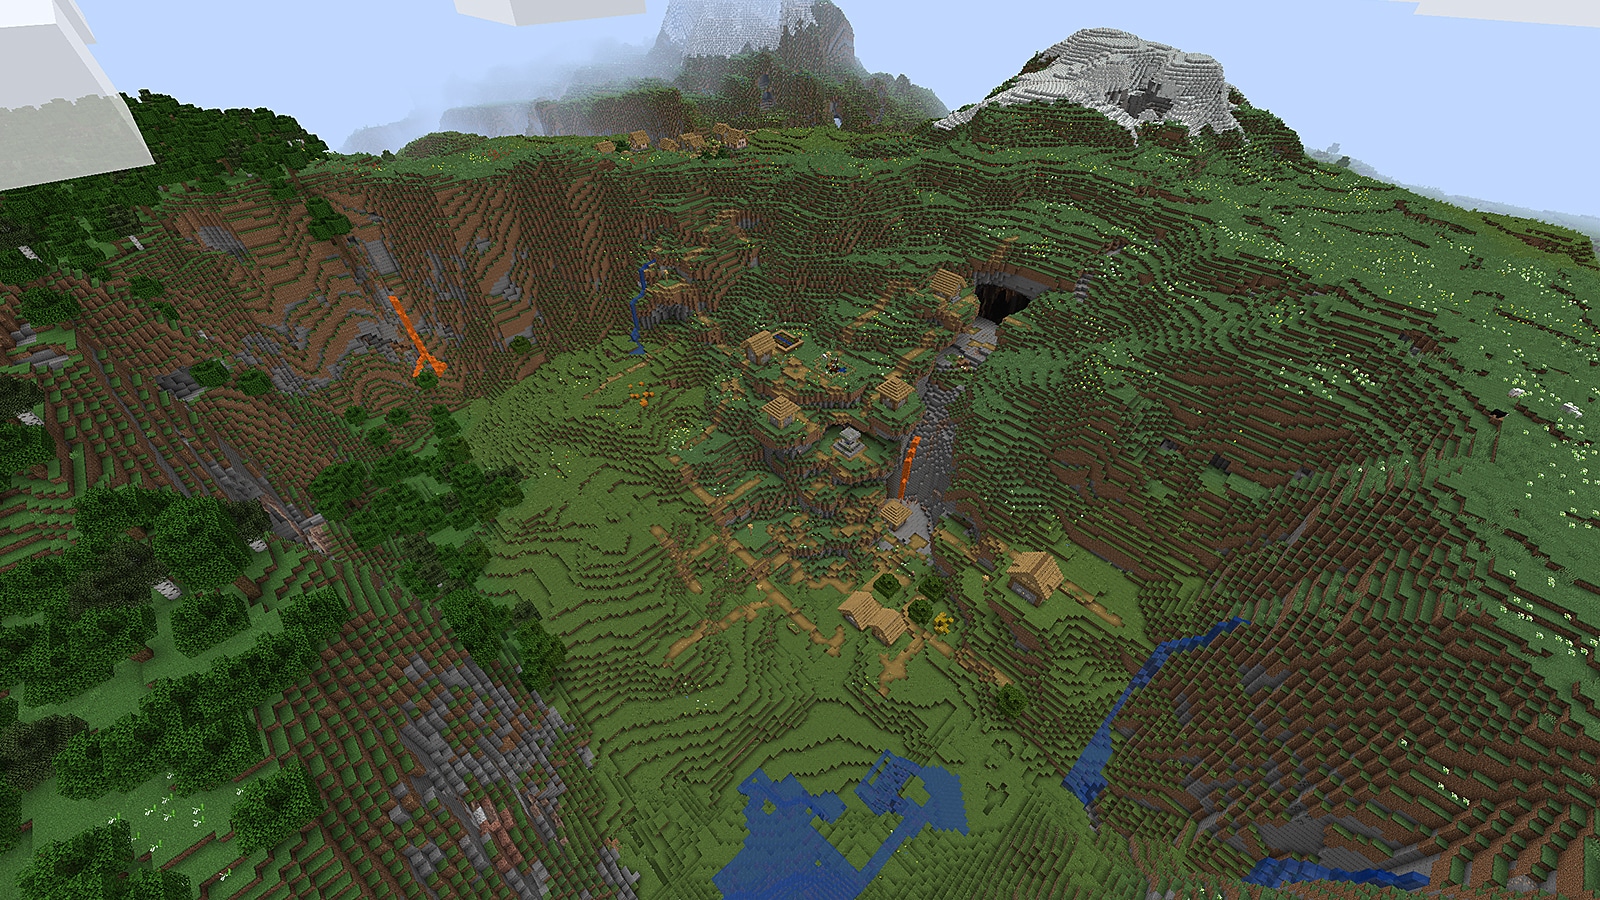 Wioska równinowa schowana w dolinie w Minecraft